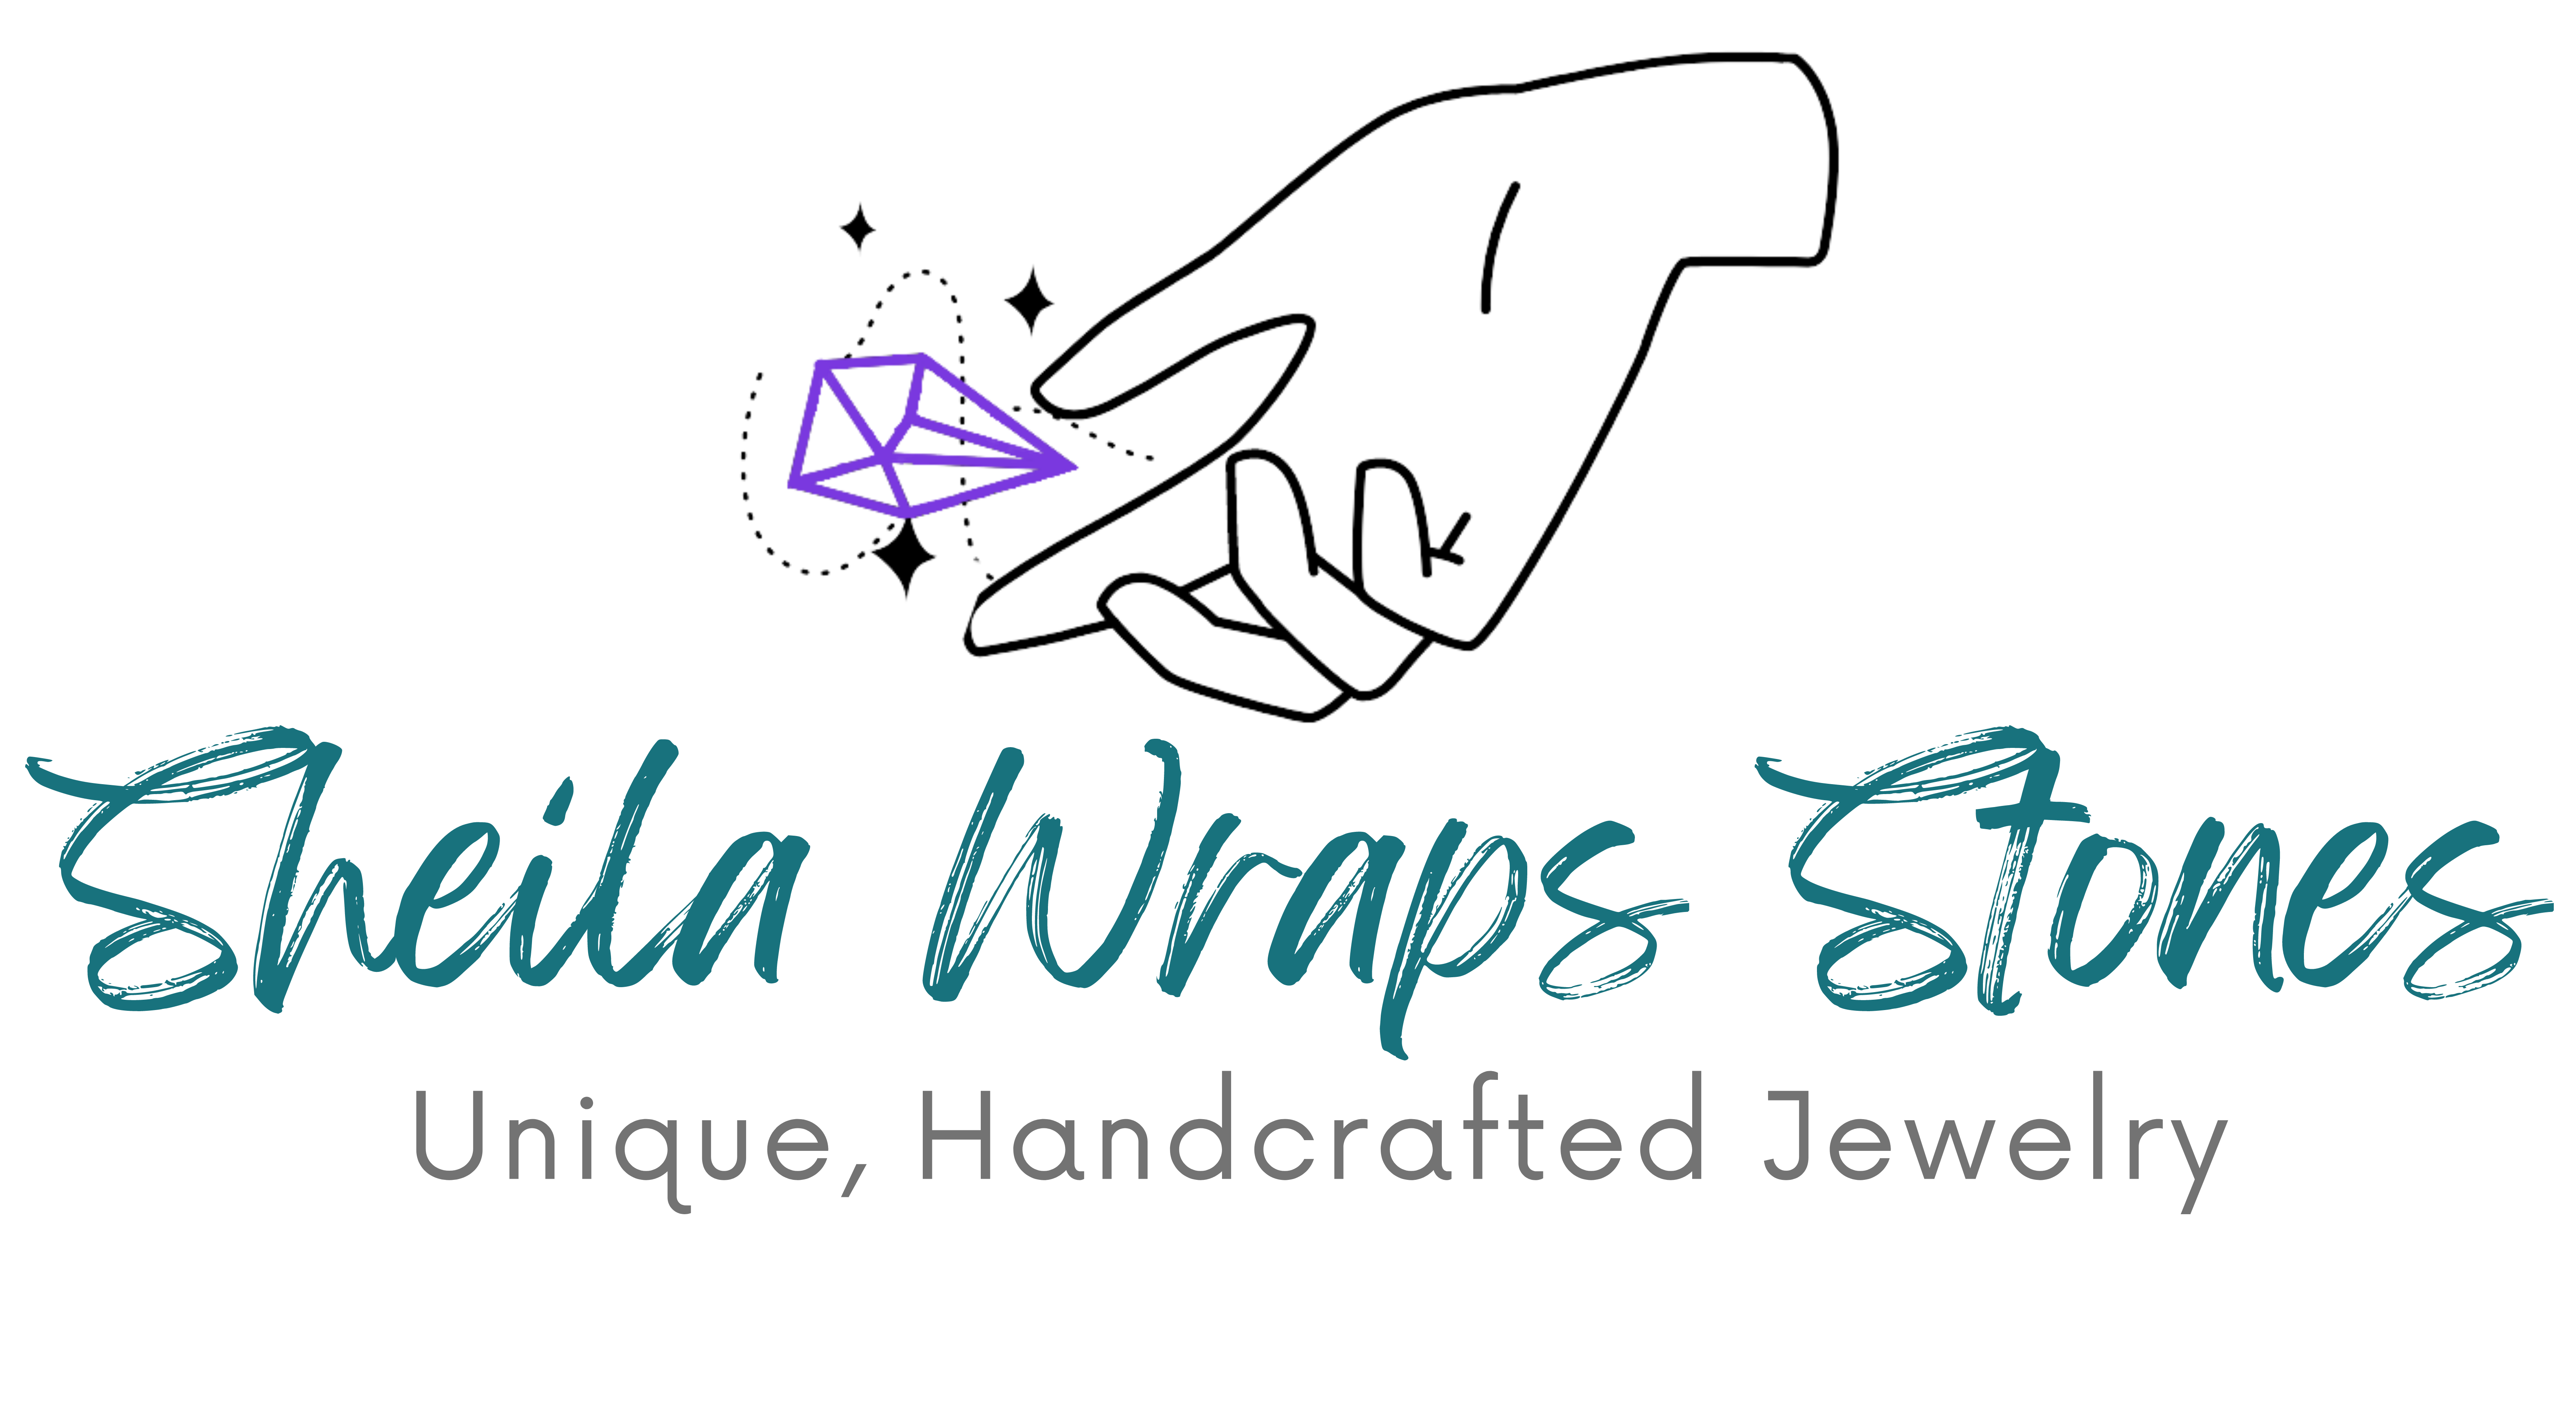 Sheila Wraps Stones logo